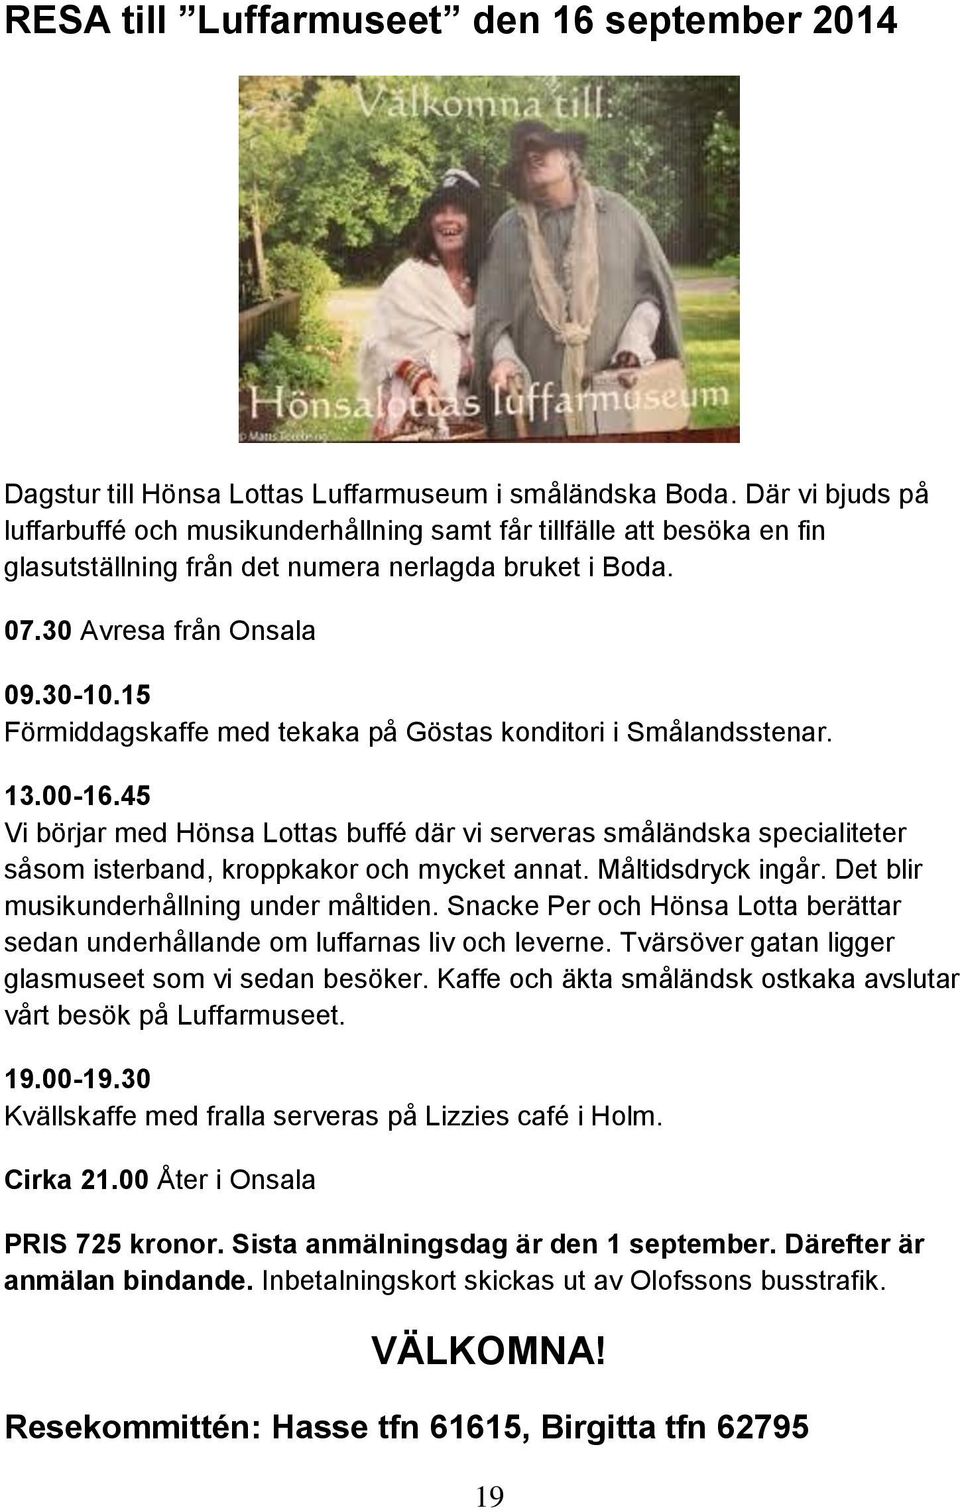 15 Förmiddagskaffe med tekaka på Göstas konditori i Smålandsstenar. 13.00-16.45 Vi börjar med Hönsa Lottas buffé där vi serveras småländska specialiteter såsom isterband, kroppkakor och mycket annat.